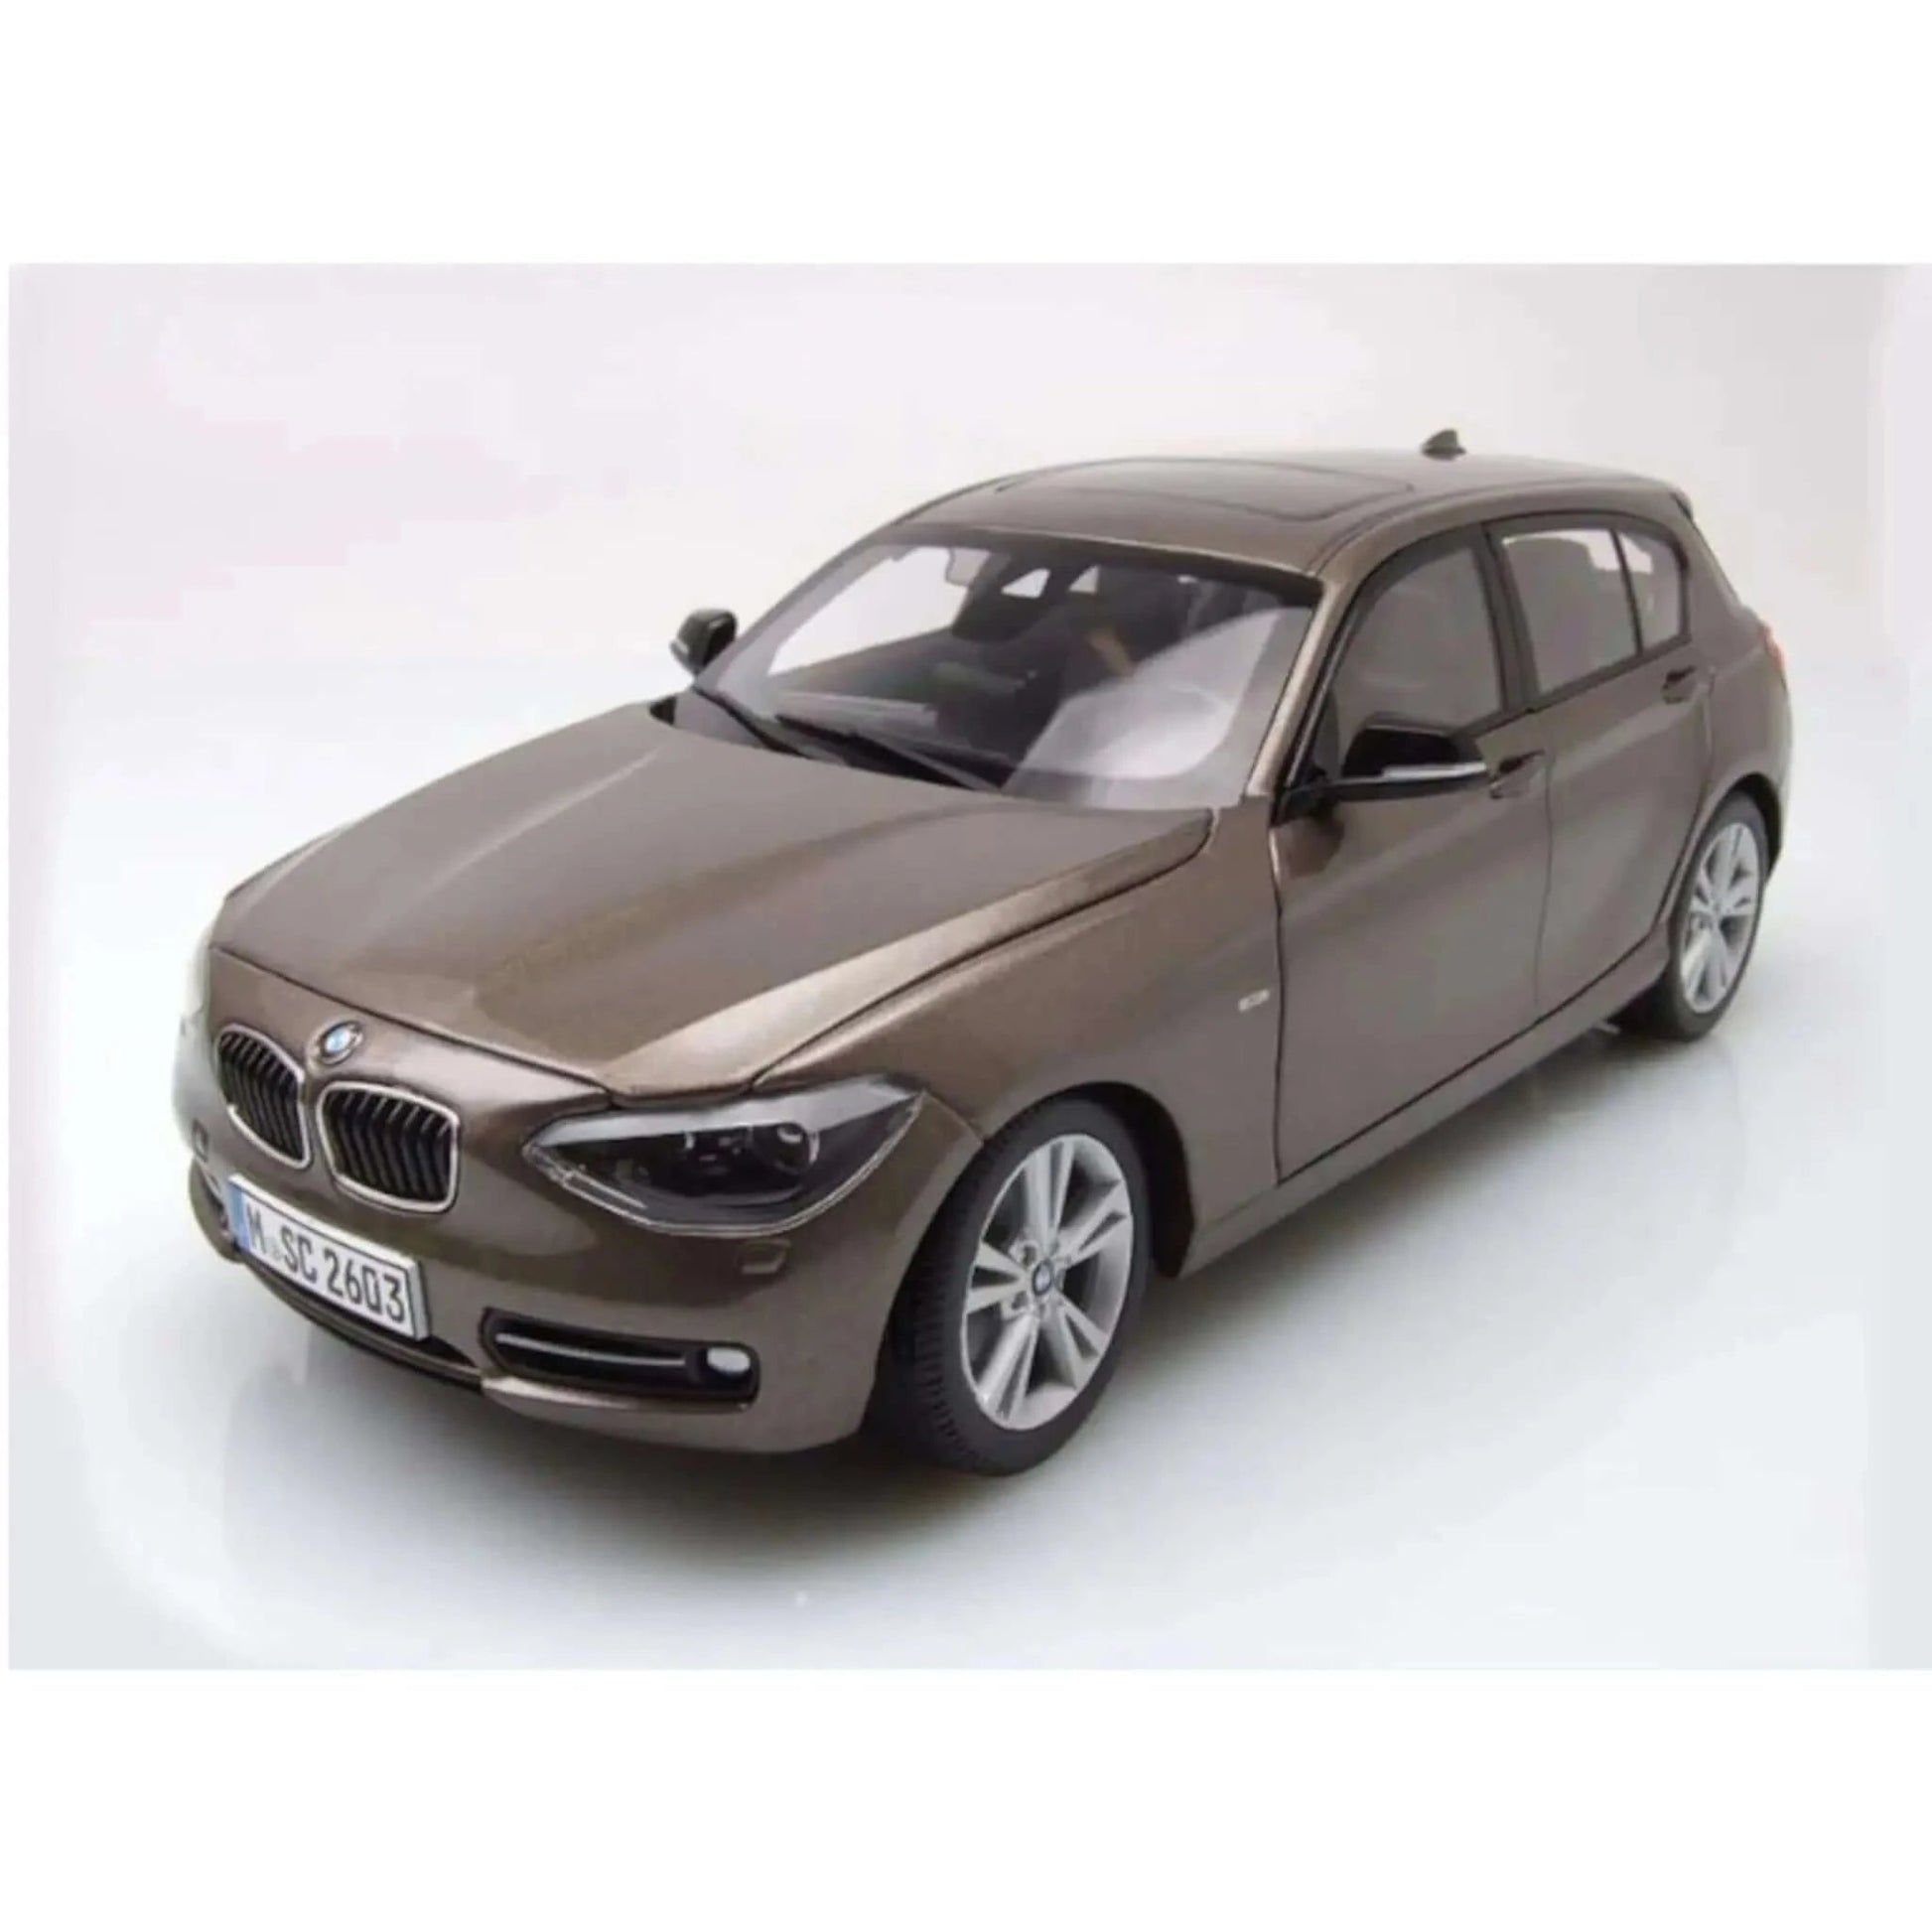 BMW serie 1 (F20) 2010 sparkling bronze Paragon 1/18 - para97006